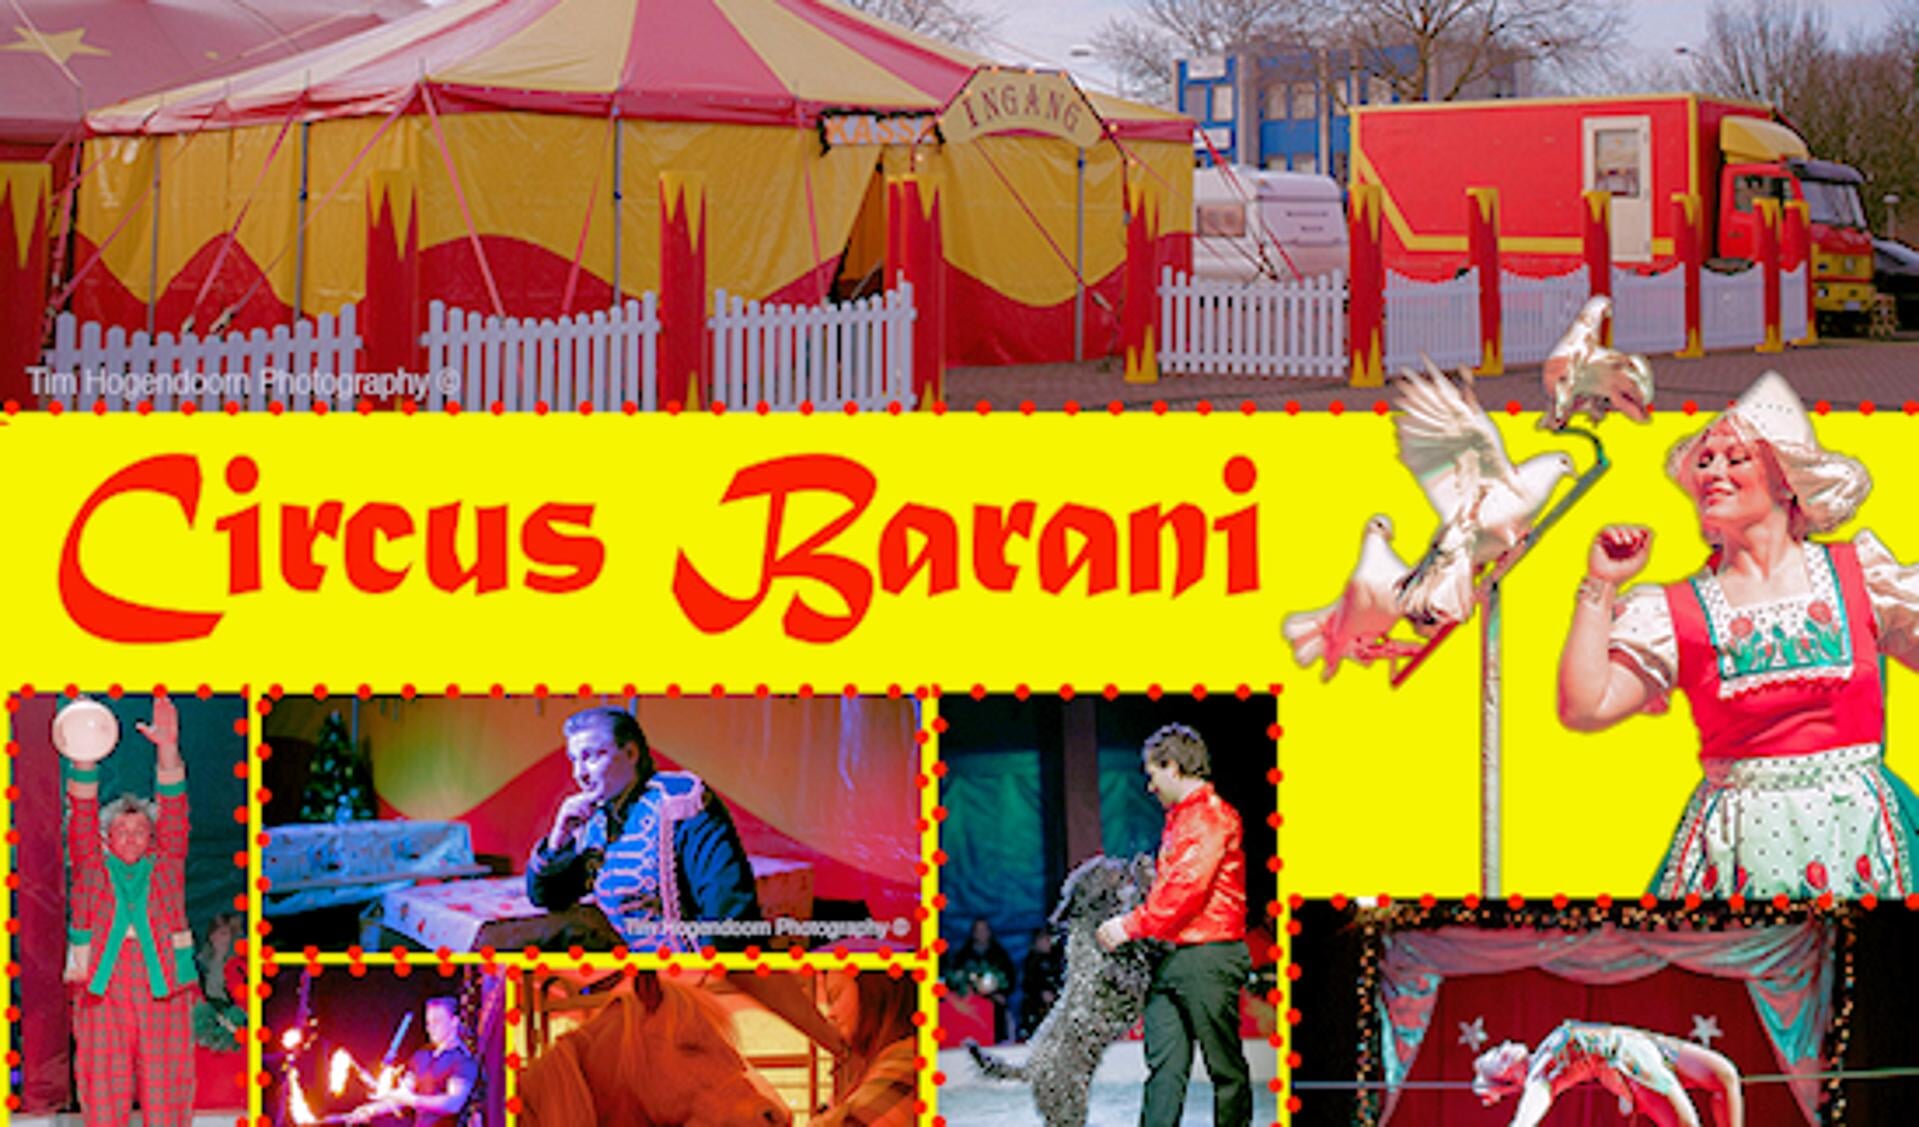 Circus Barani in betere tijden.